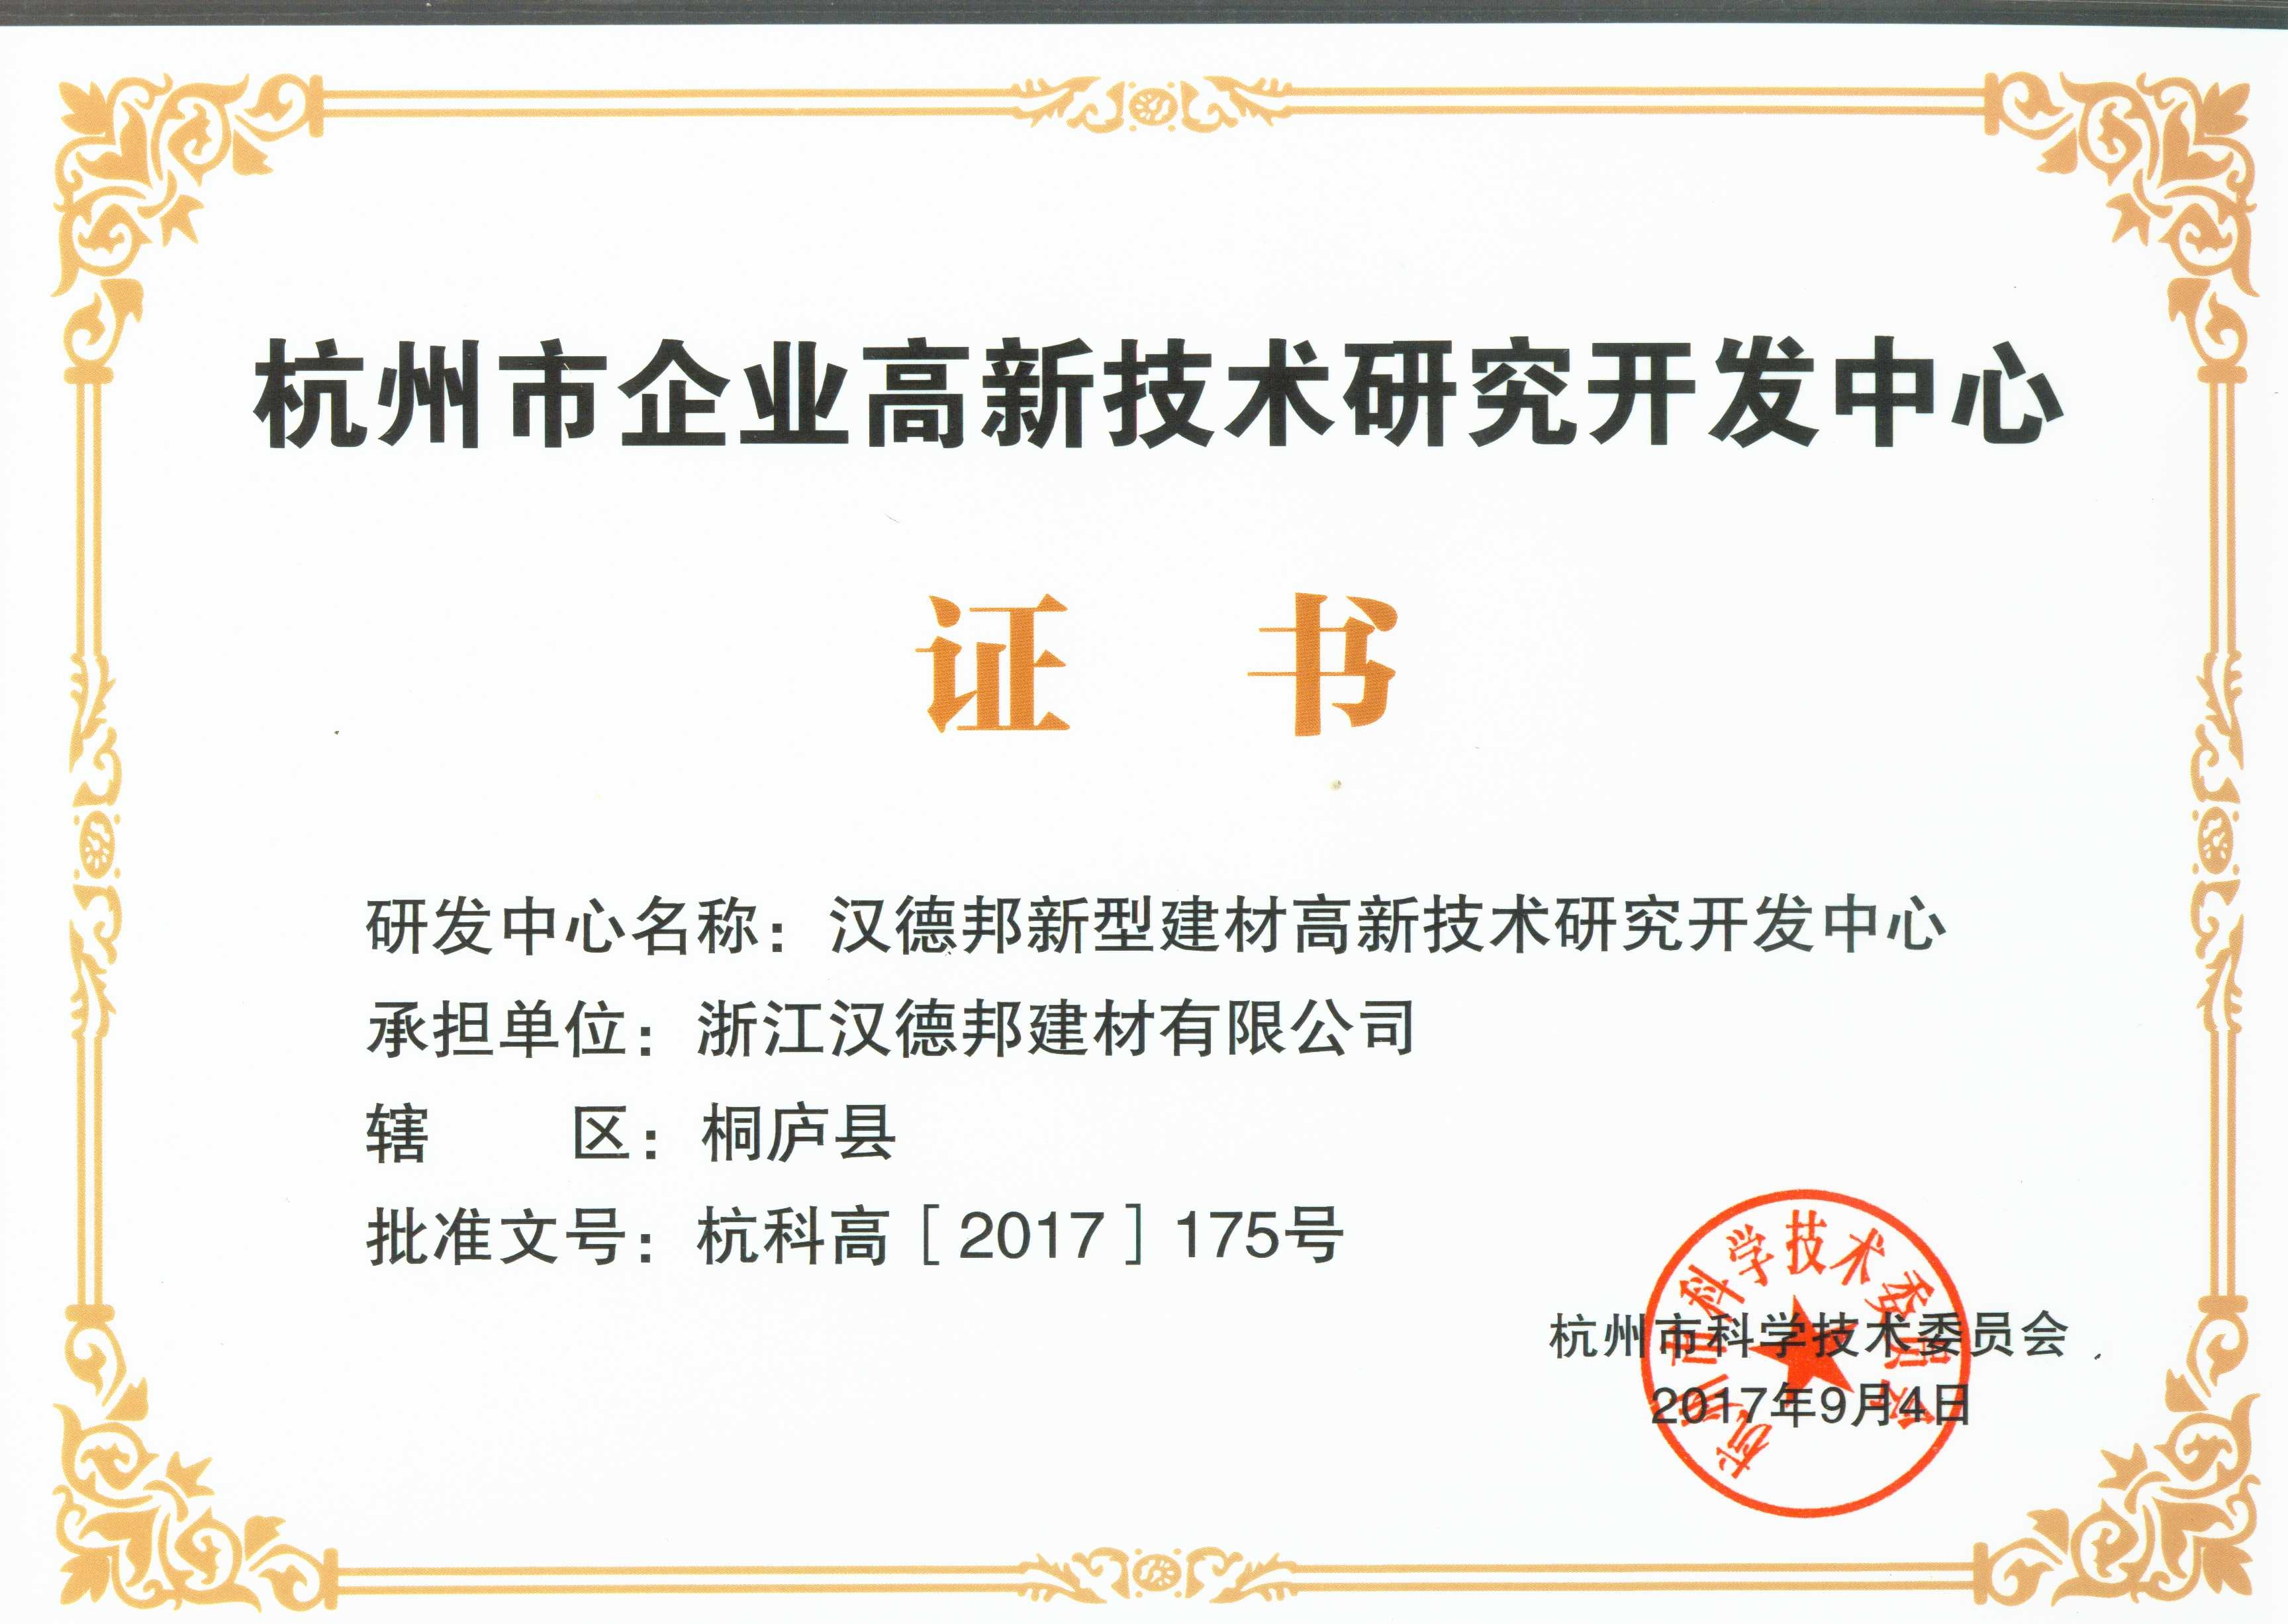 杭州市企业高新技术研究开发中心证书2017.9.jpg